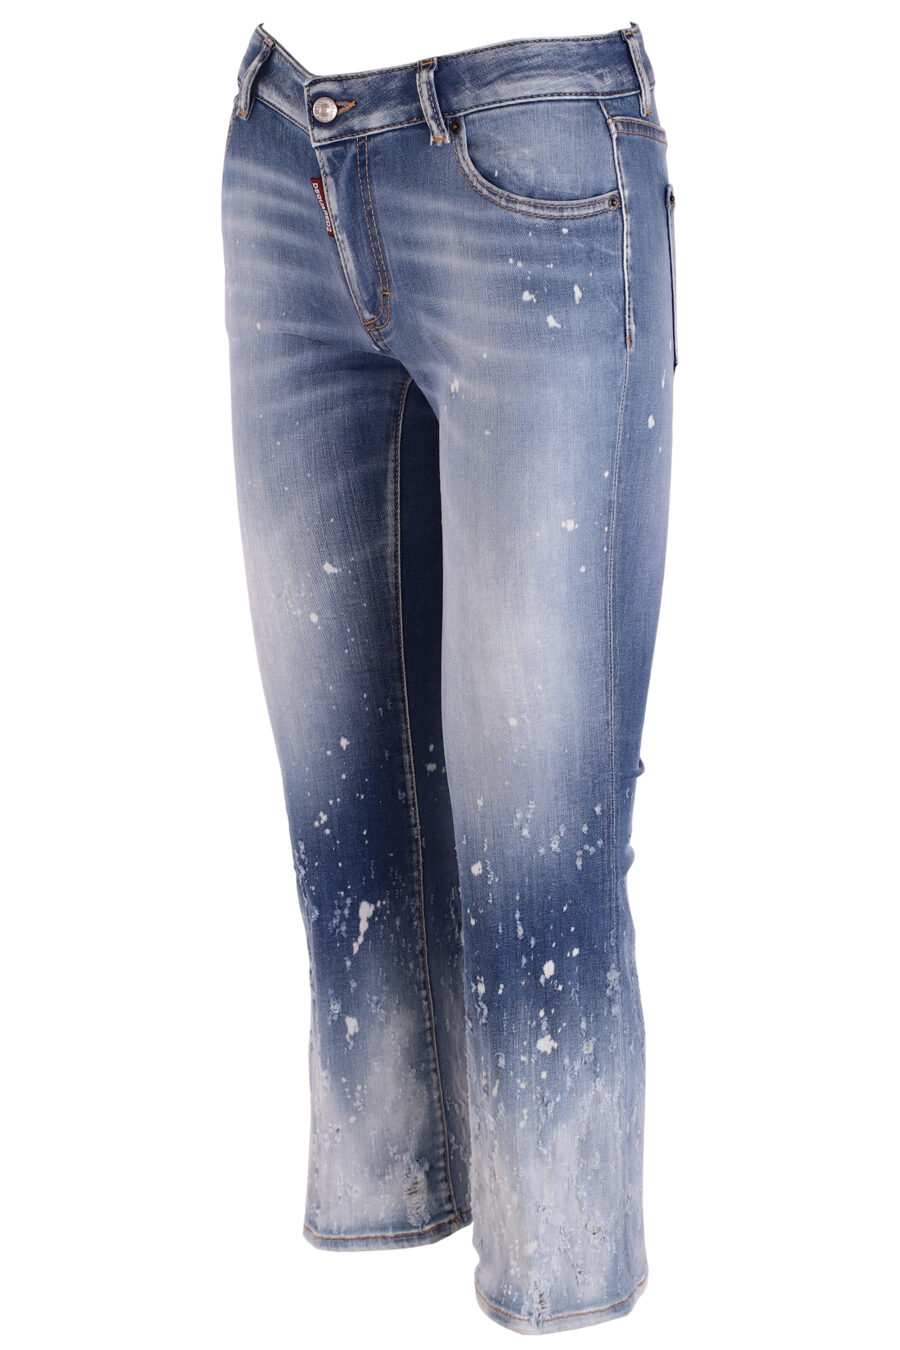 Pantalón vaquero "bell bottom" azul claro con pintura blanca - IMG 3758